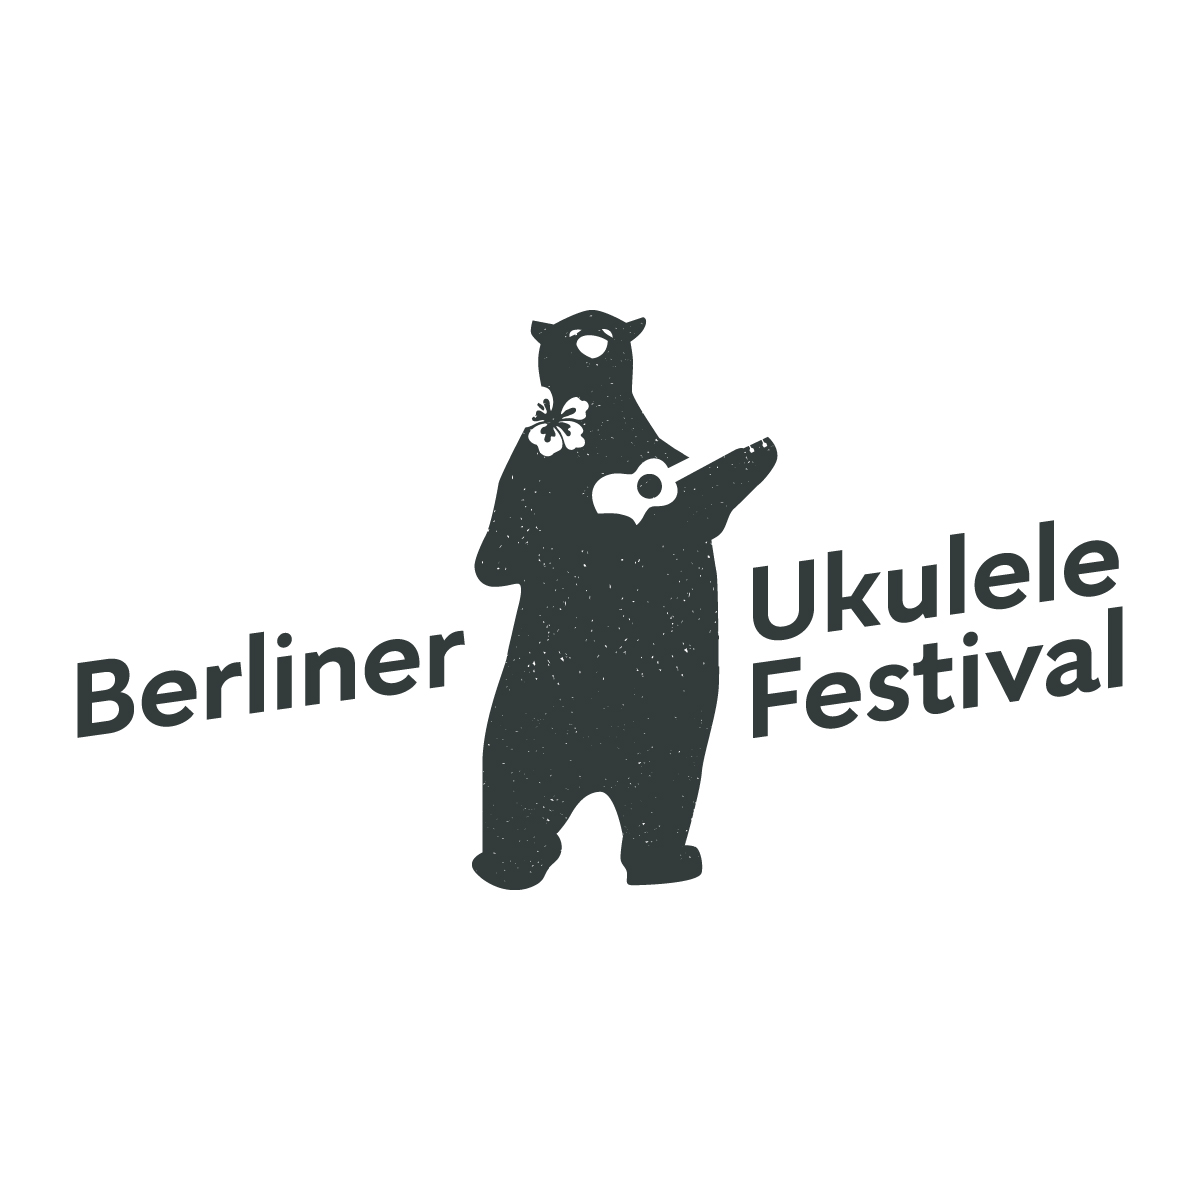 (c) Berliner-ukulele-festival.de